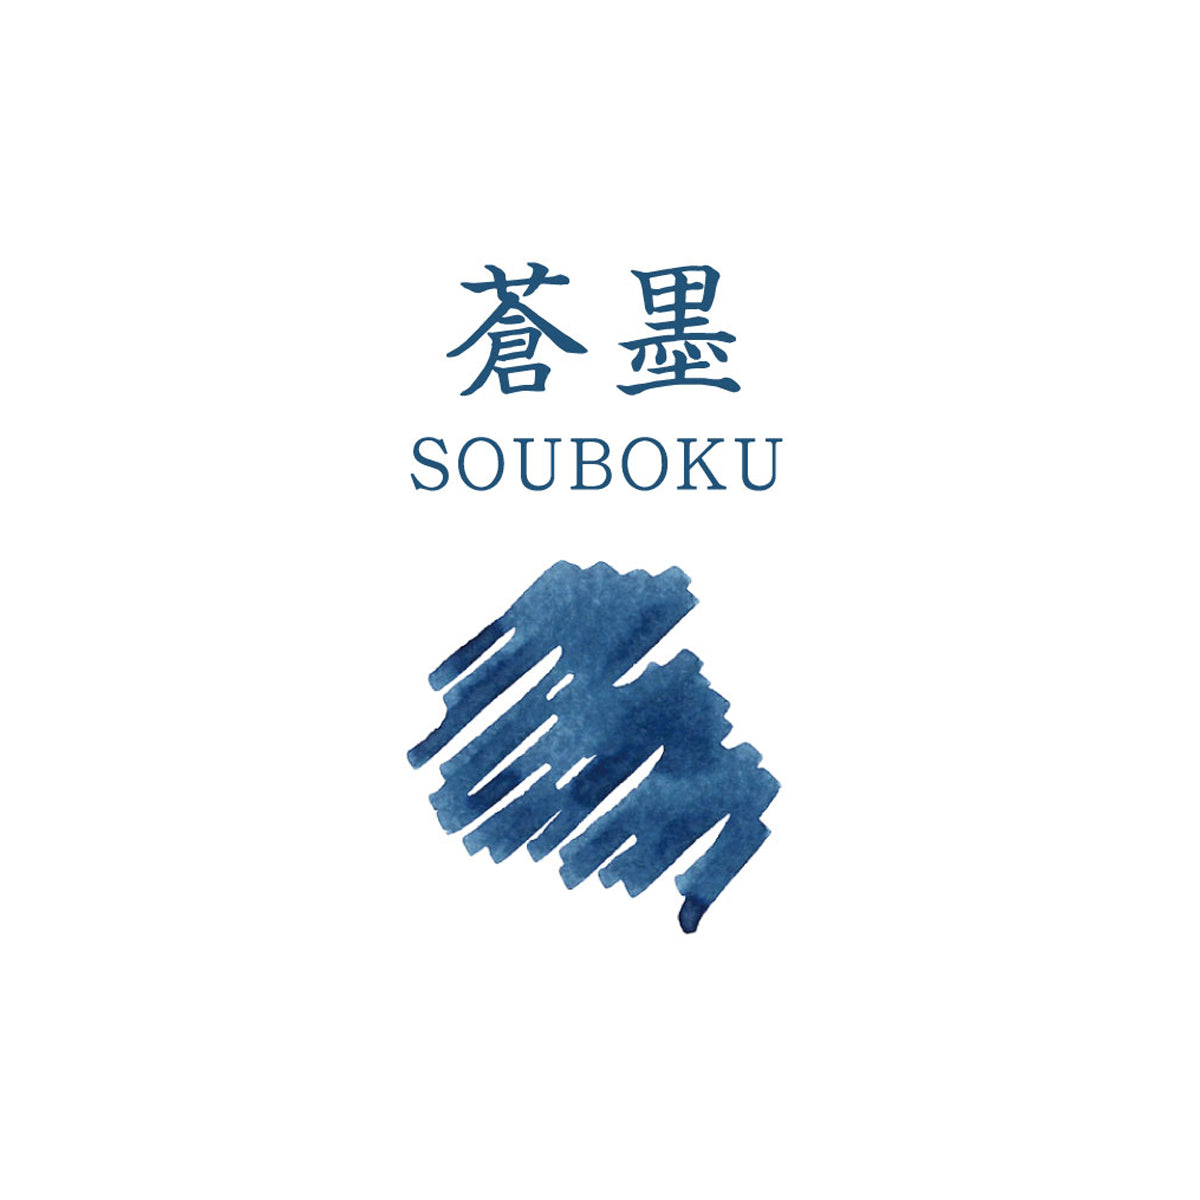 Sailor Tinte - Souboku